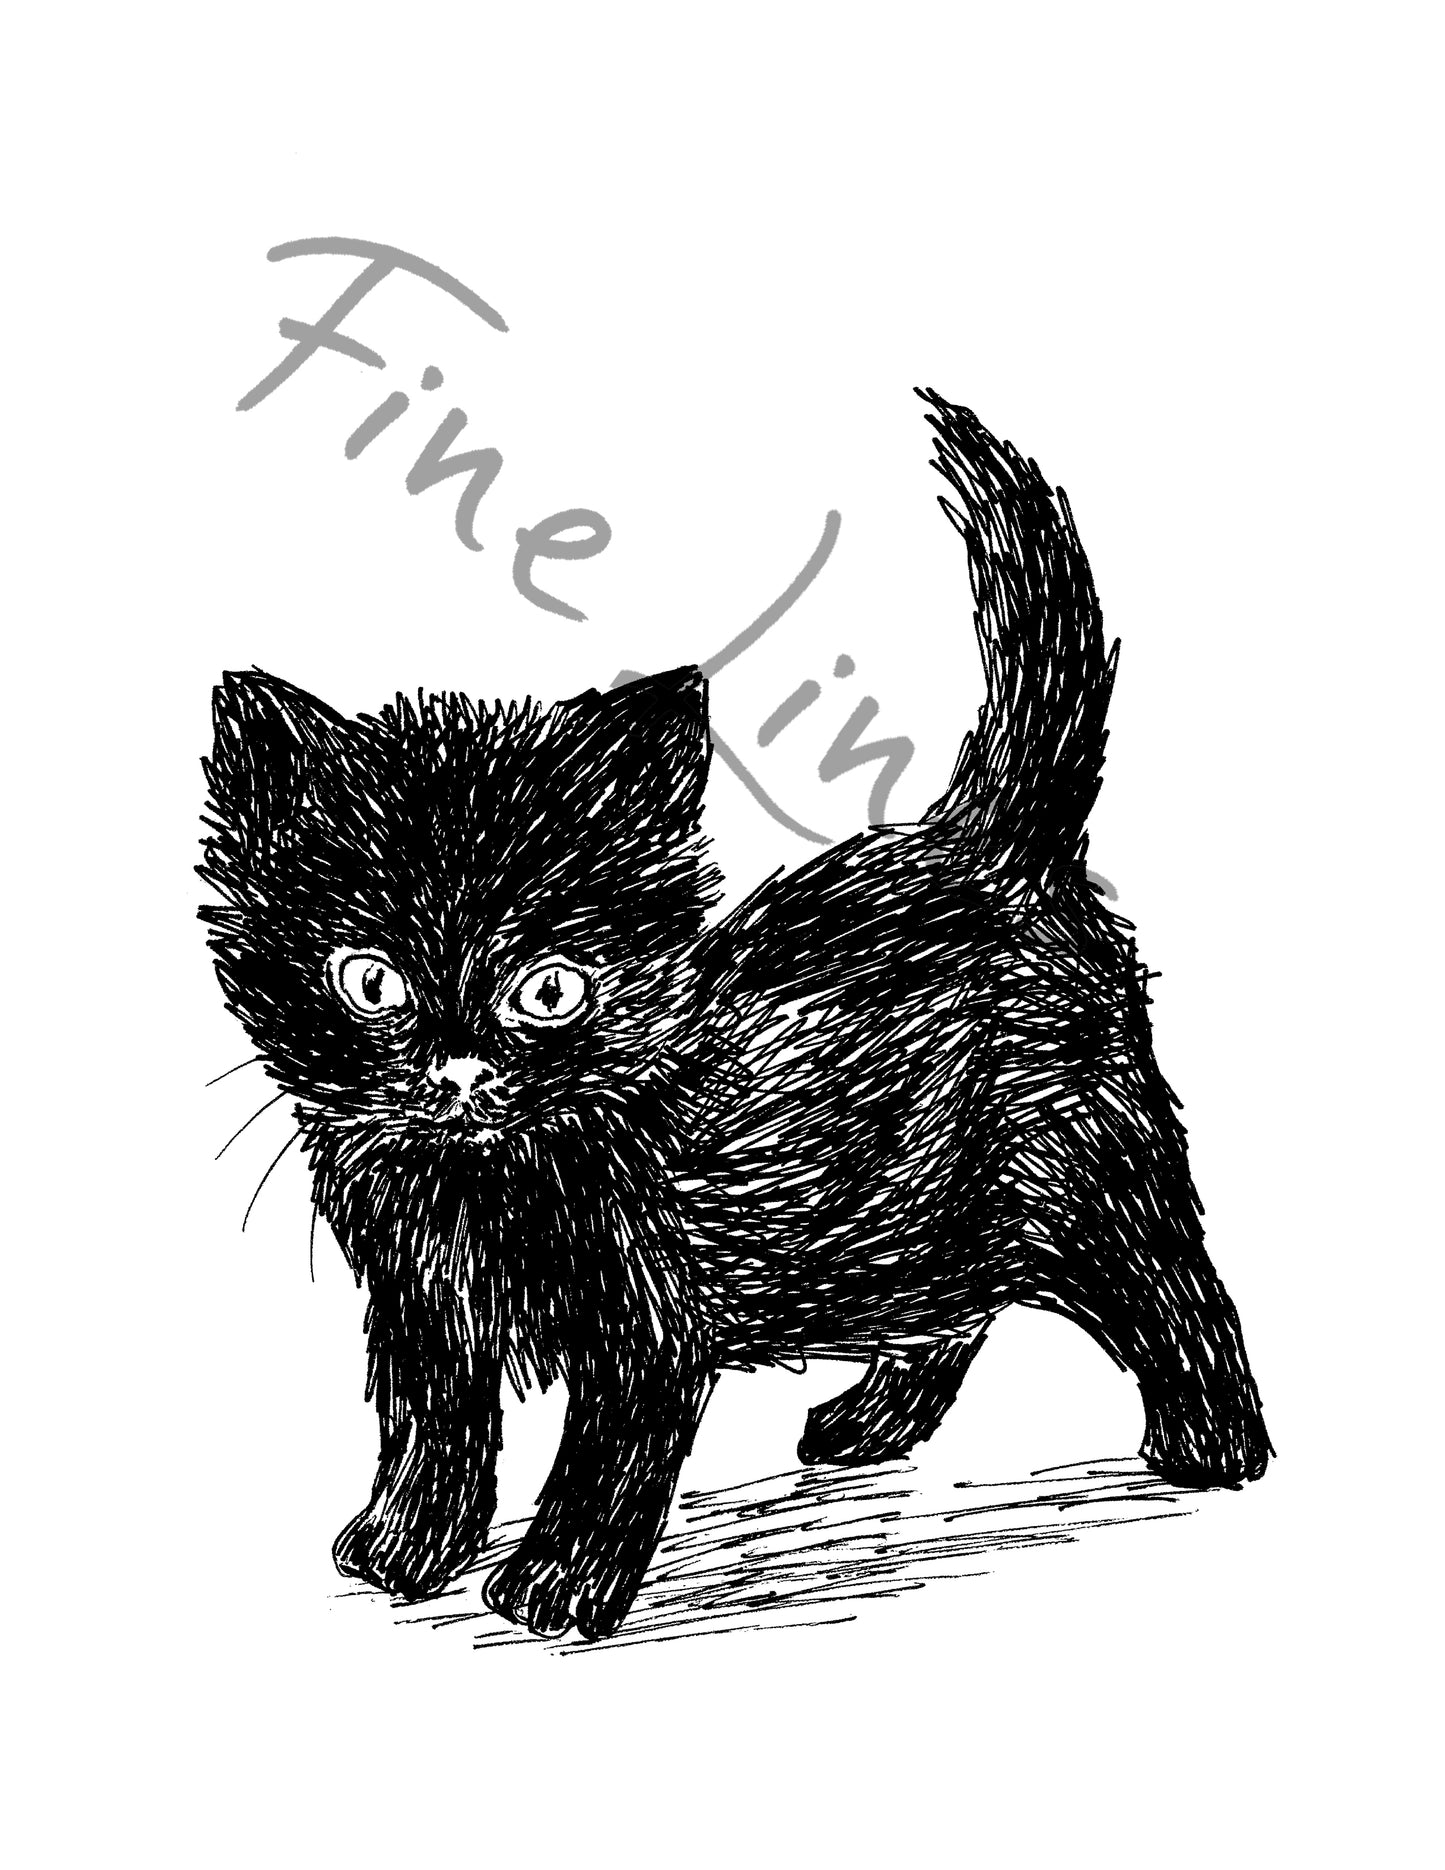 חתול שחור להדפסה ומיסגור